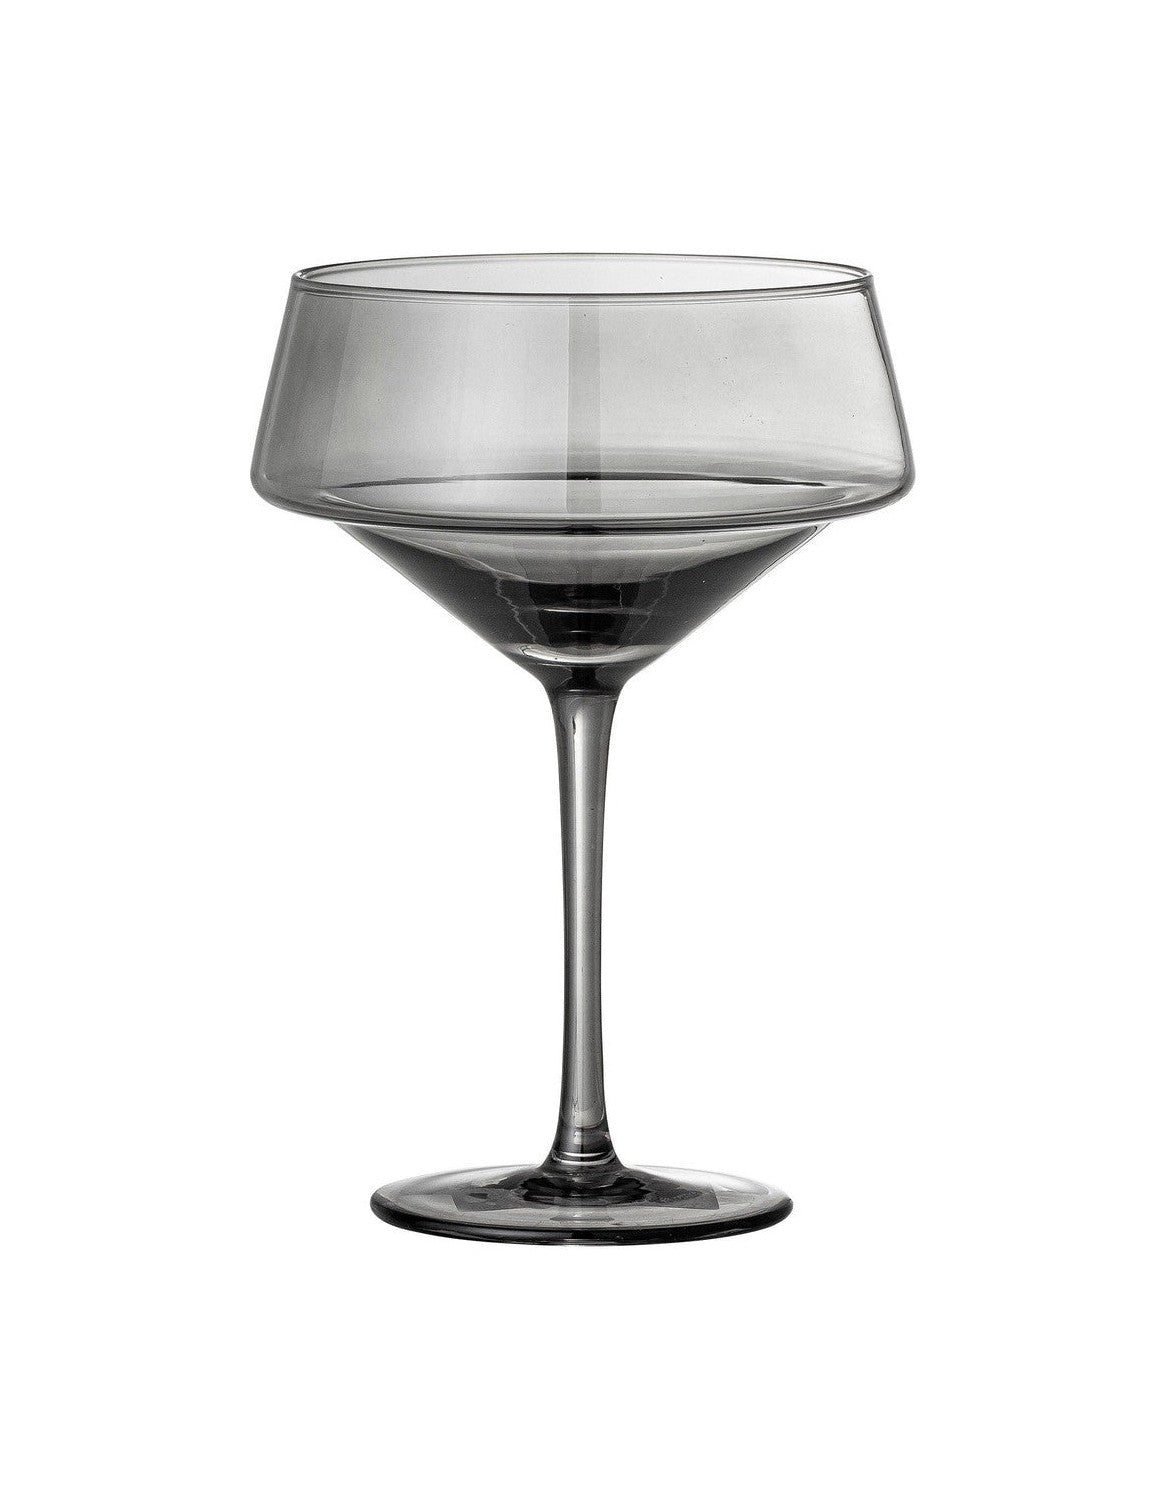 Bloomingville Yvette Cocktailglas, grau, Glas